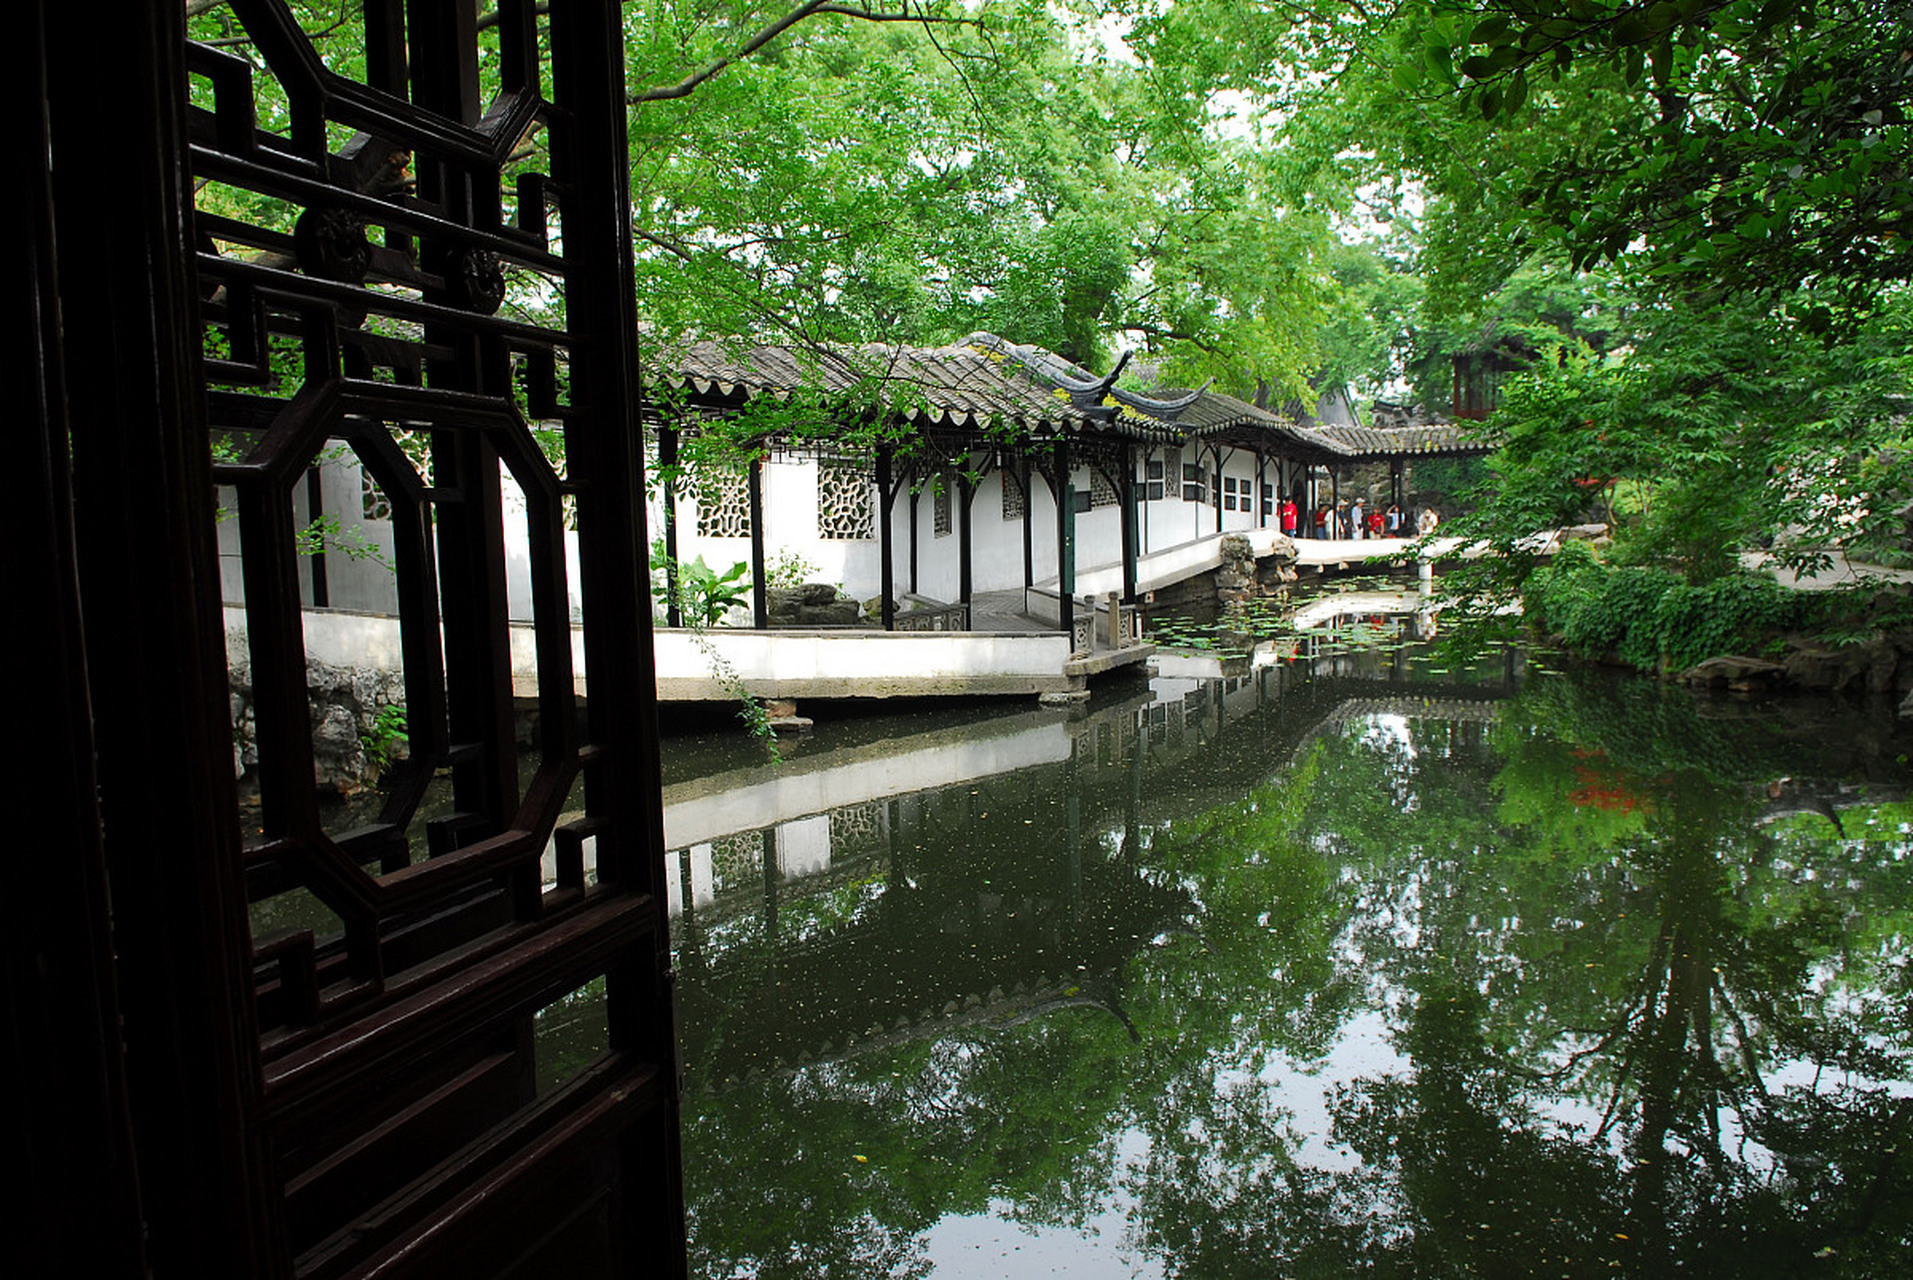 拙政园,位于江苏省苏州市,是中国四大名园之一,也是世界文化遗产的